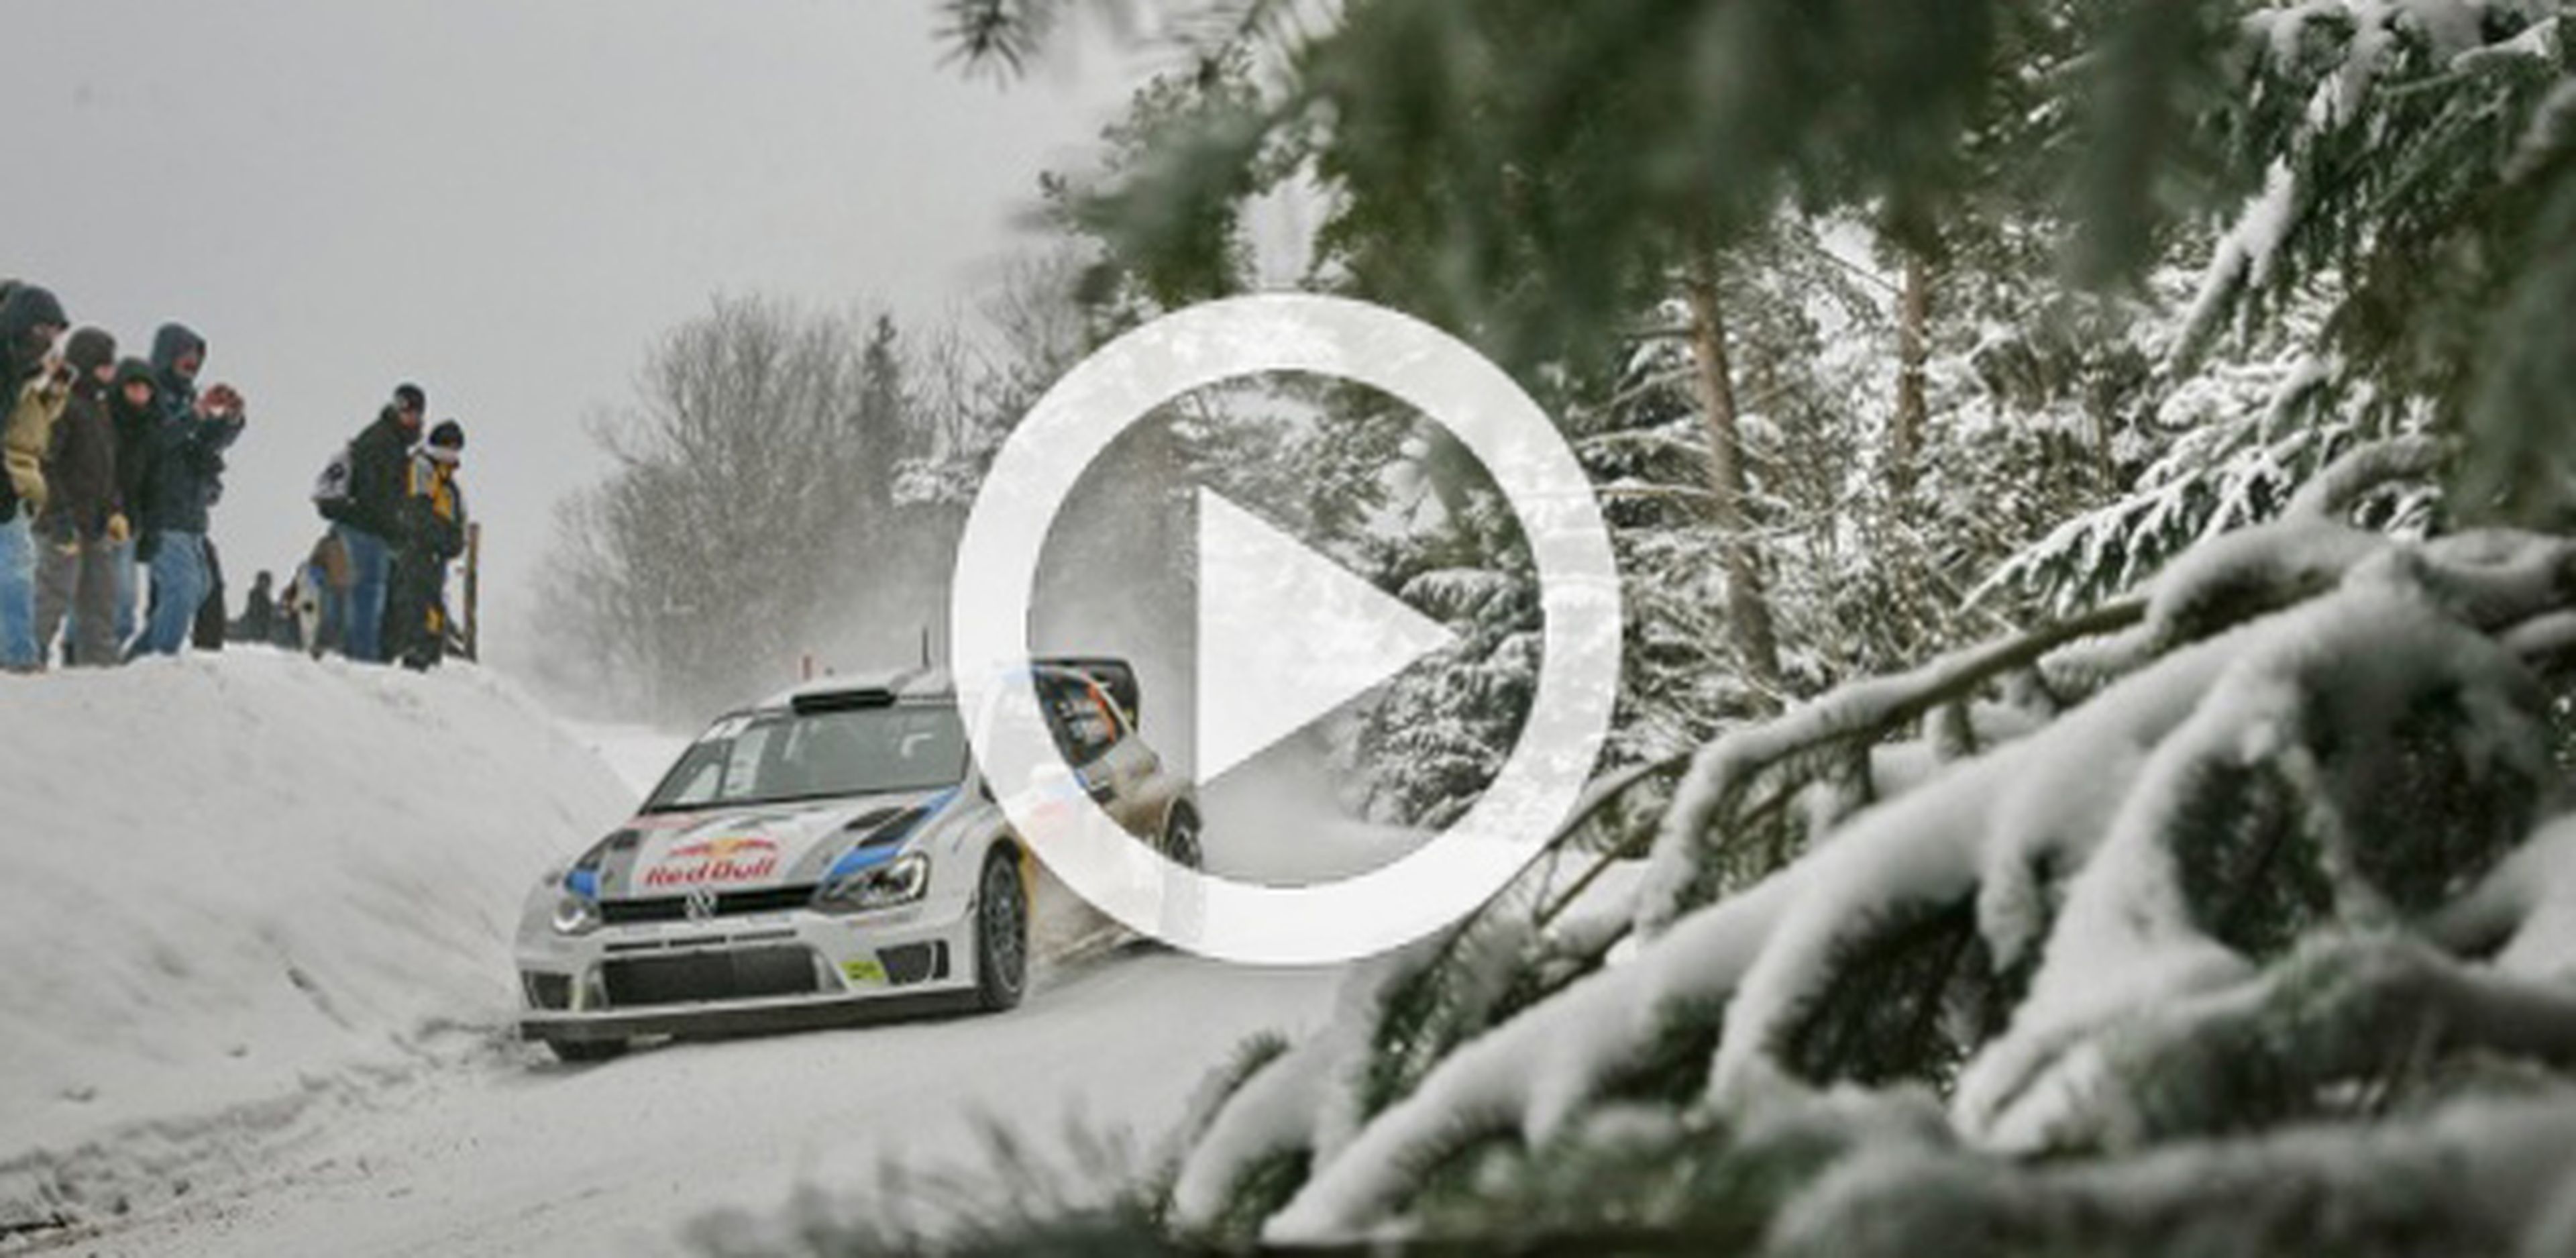 Latvala prueba el Volkswagen Polo WRC 2014 en Montecarlo